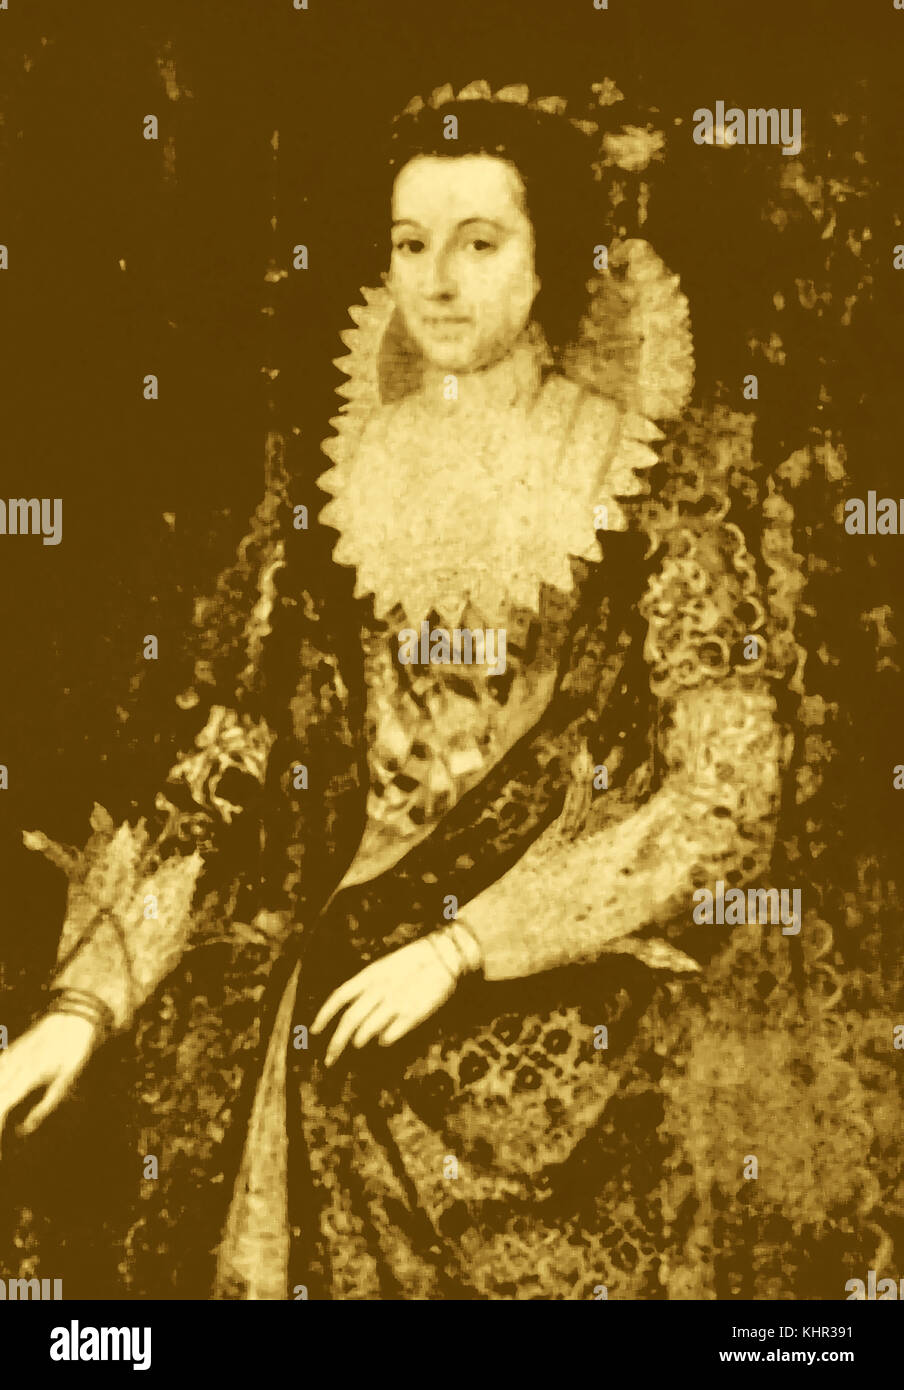 Ein Porträt von Elizabeth "Bess" Raleigh (geb. Throckmorton; (1565 - ca. 1647) 'geheime' Ehefrau von Sir Walter Raleigh's. Gentlewoman der geheimen Kammer der Königin Elisabeth I. von England Stockfoto